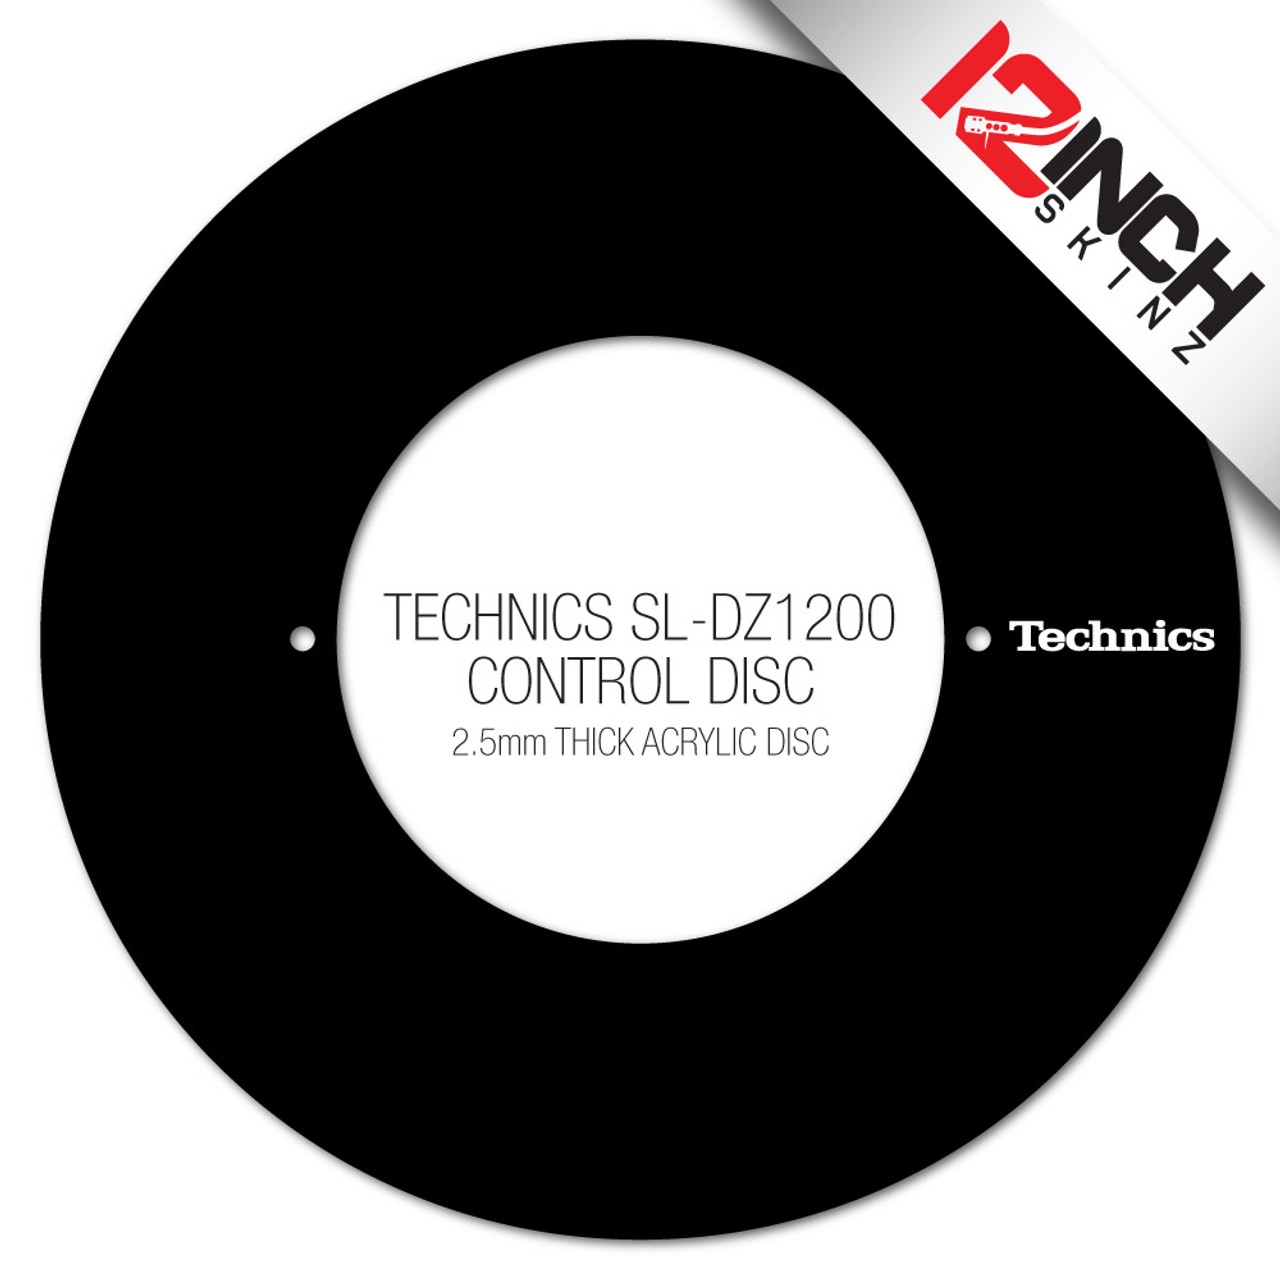 Technics SL-DZ1200 Control Disc (SINGLE) - Technics Cue Colors